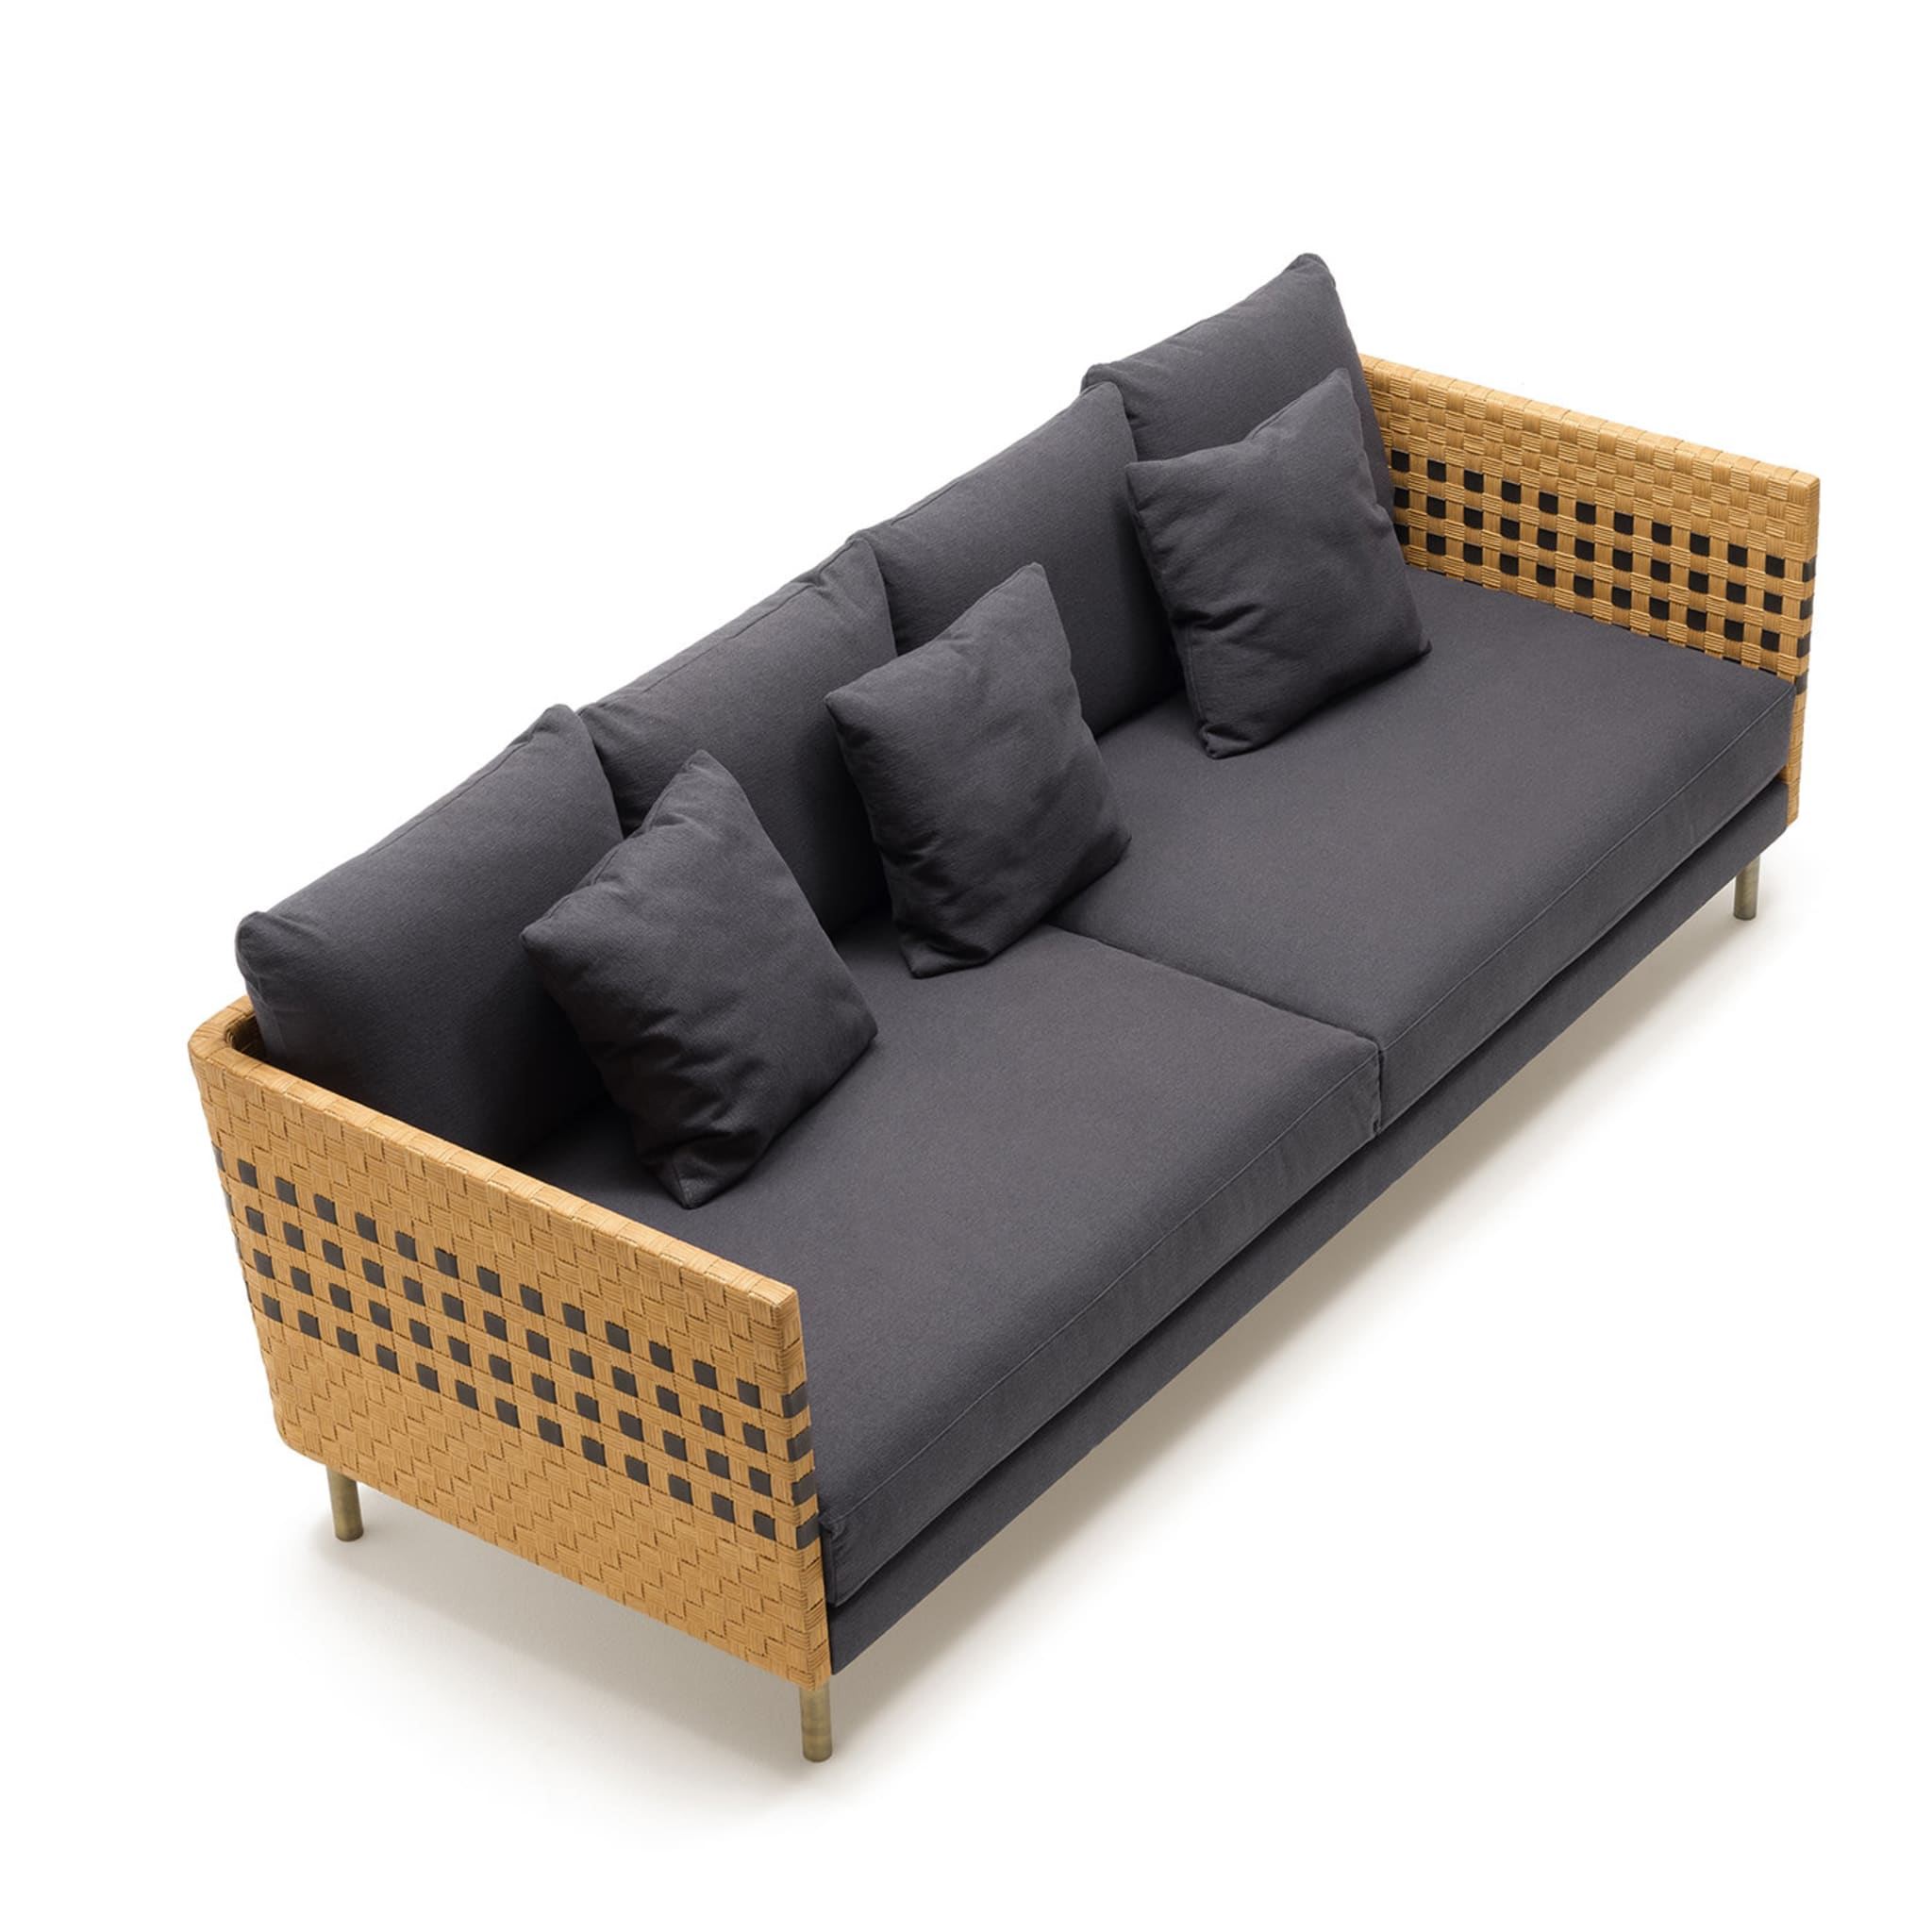 Milli 3-Seater Sofa by Angeletti Ruzza Design - Alternative view 1